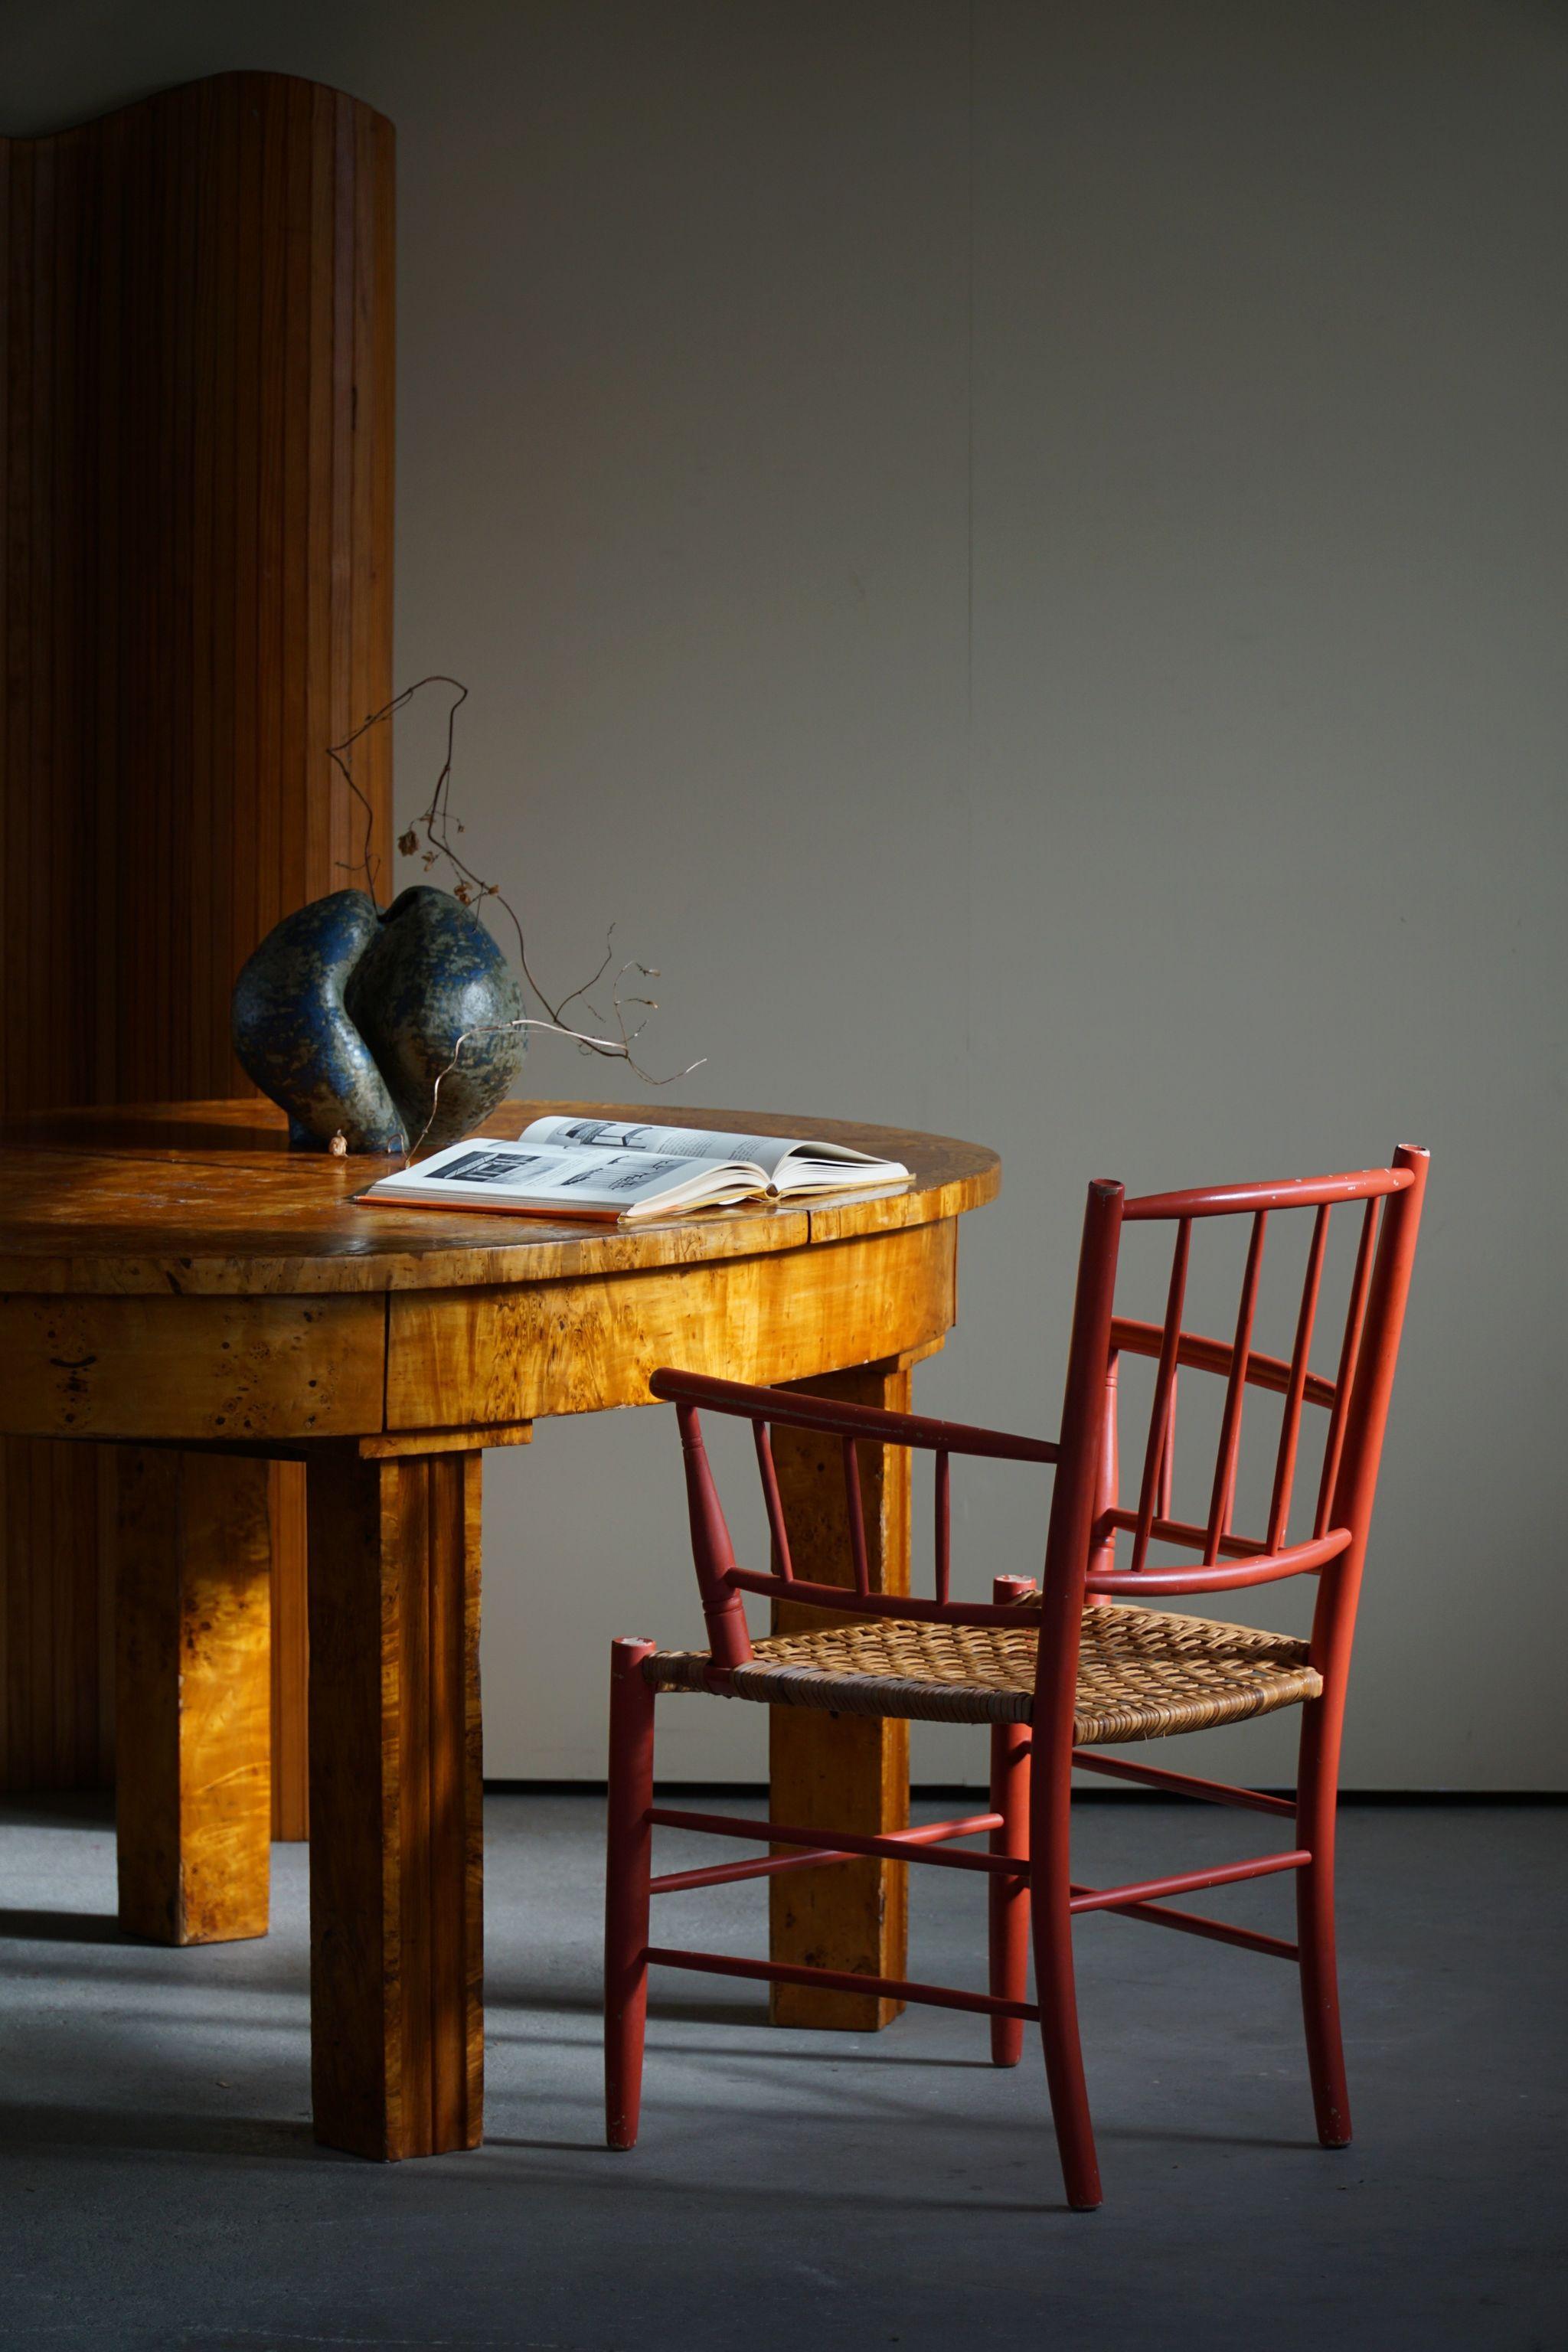 Seltene Vintage-Schönheit des dänischen Keramikkünstlers Björn Wiinblad, hergestellt für die Nässjö Stolefabrik in Schweden. Ein sammelwürdiger, rot lackierter Sessel mit Sitz aus Rohrgeflecht in einer herrlichen Patina. 

Ein dekorativer Stuhl